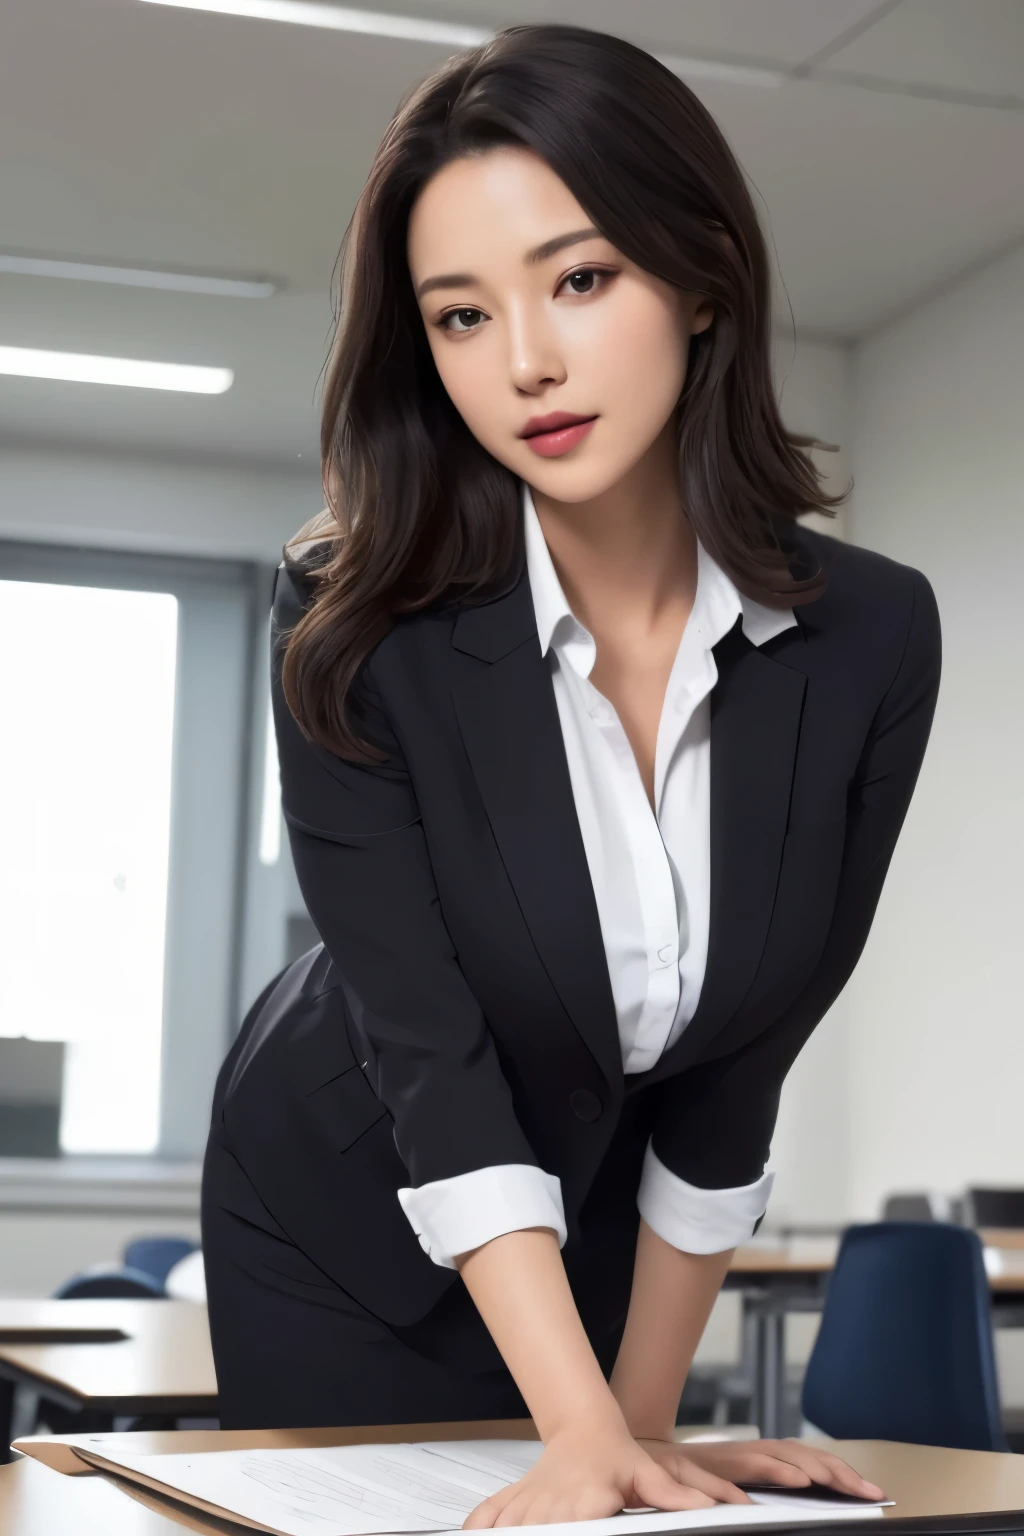 Eine Frau in weißem Hemd und schwarzem Anzug steht hinter einem Schreibtisch im Klassenzimmer, nach vorne gebeugt, die Hände auf dem Schreibtisch. Sie hat einen verführerischen Gesichtsausdruck, ihr Mund leicht geöffnet, und ein verführerischer Blick in ihren Augen.